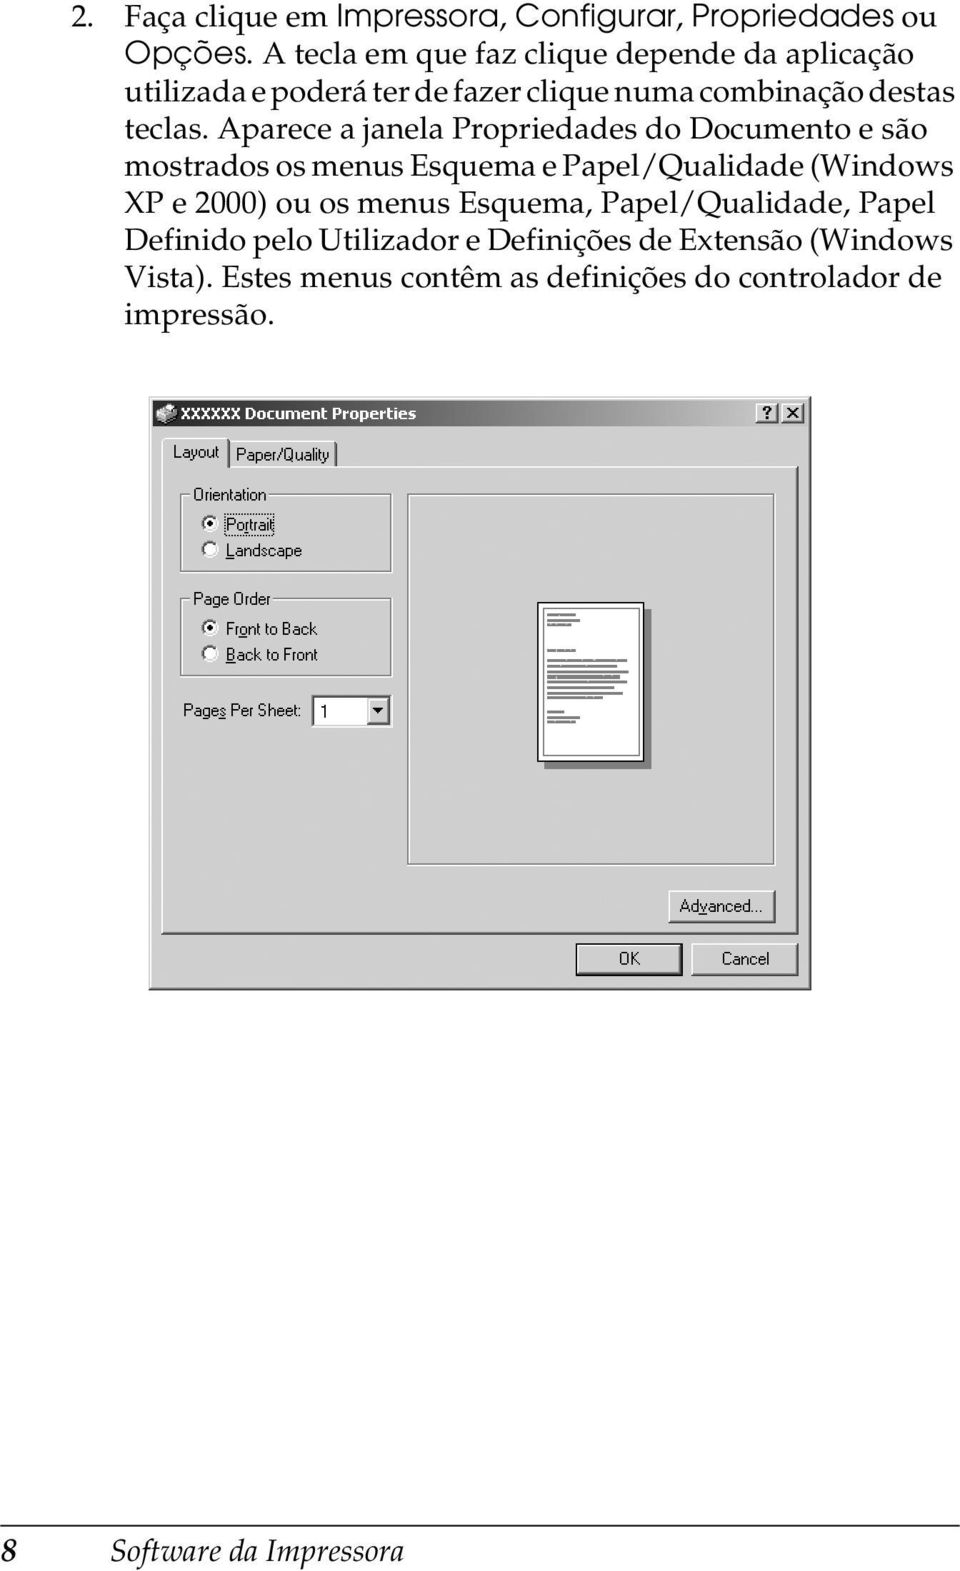 Aparece a janela Propriedades do Documento e são mostrados os menus Esquema e Papel/Qualidade (Windows XP e 2000) ou os